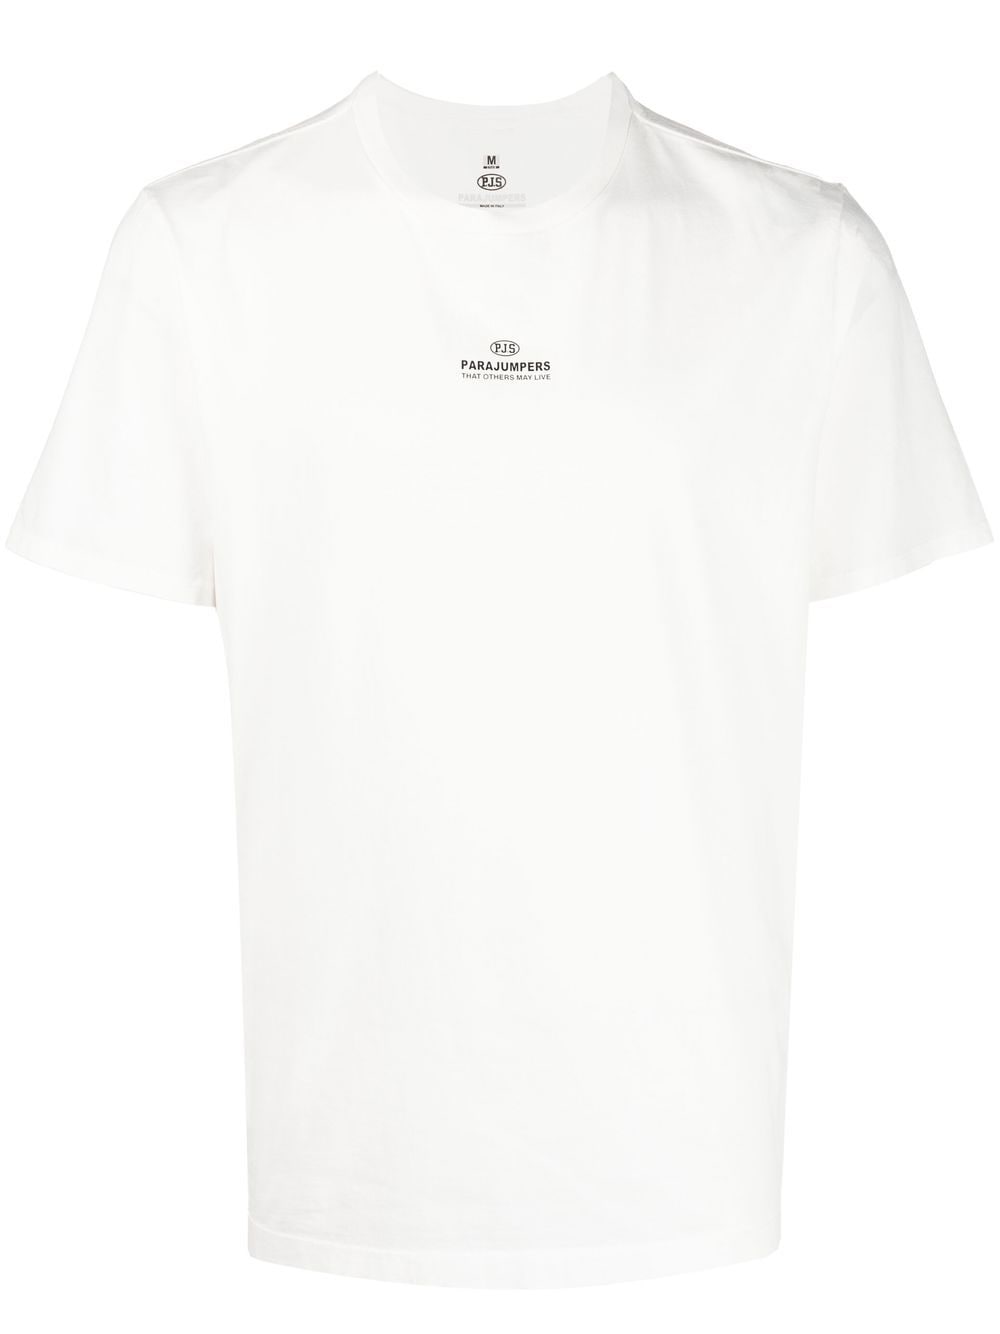 parajumpers t-shirt à logo imprimé - blanc